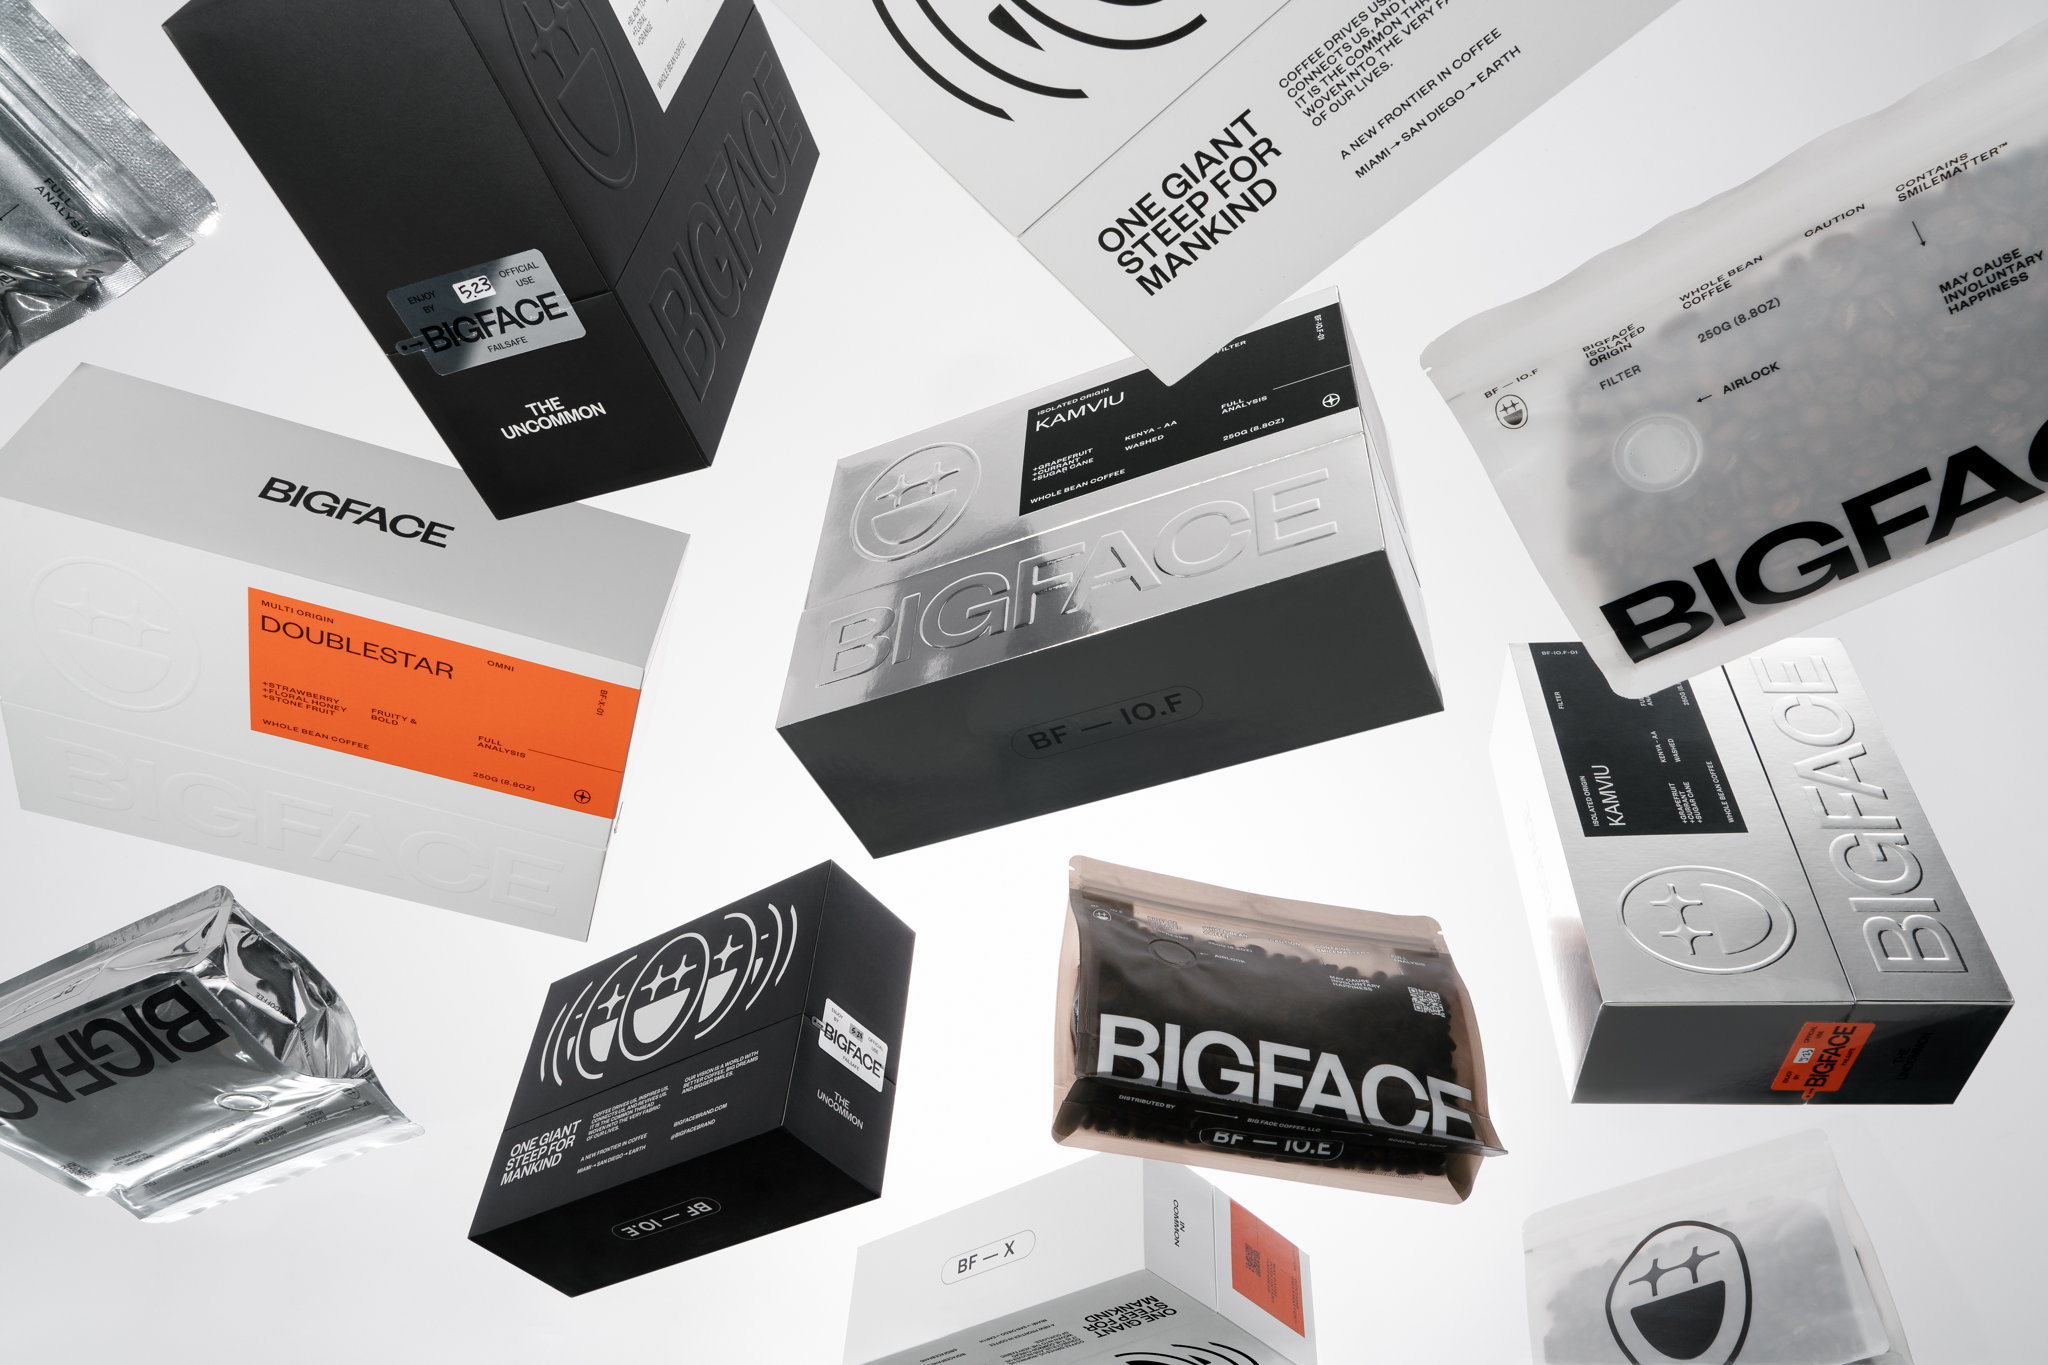 BIGFACE-Brandmonger-02.jpg